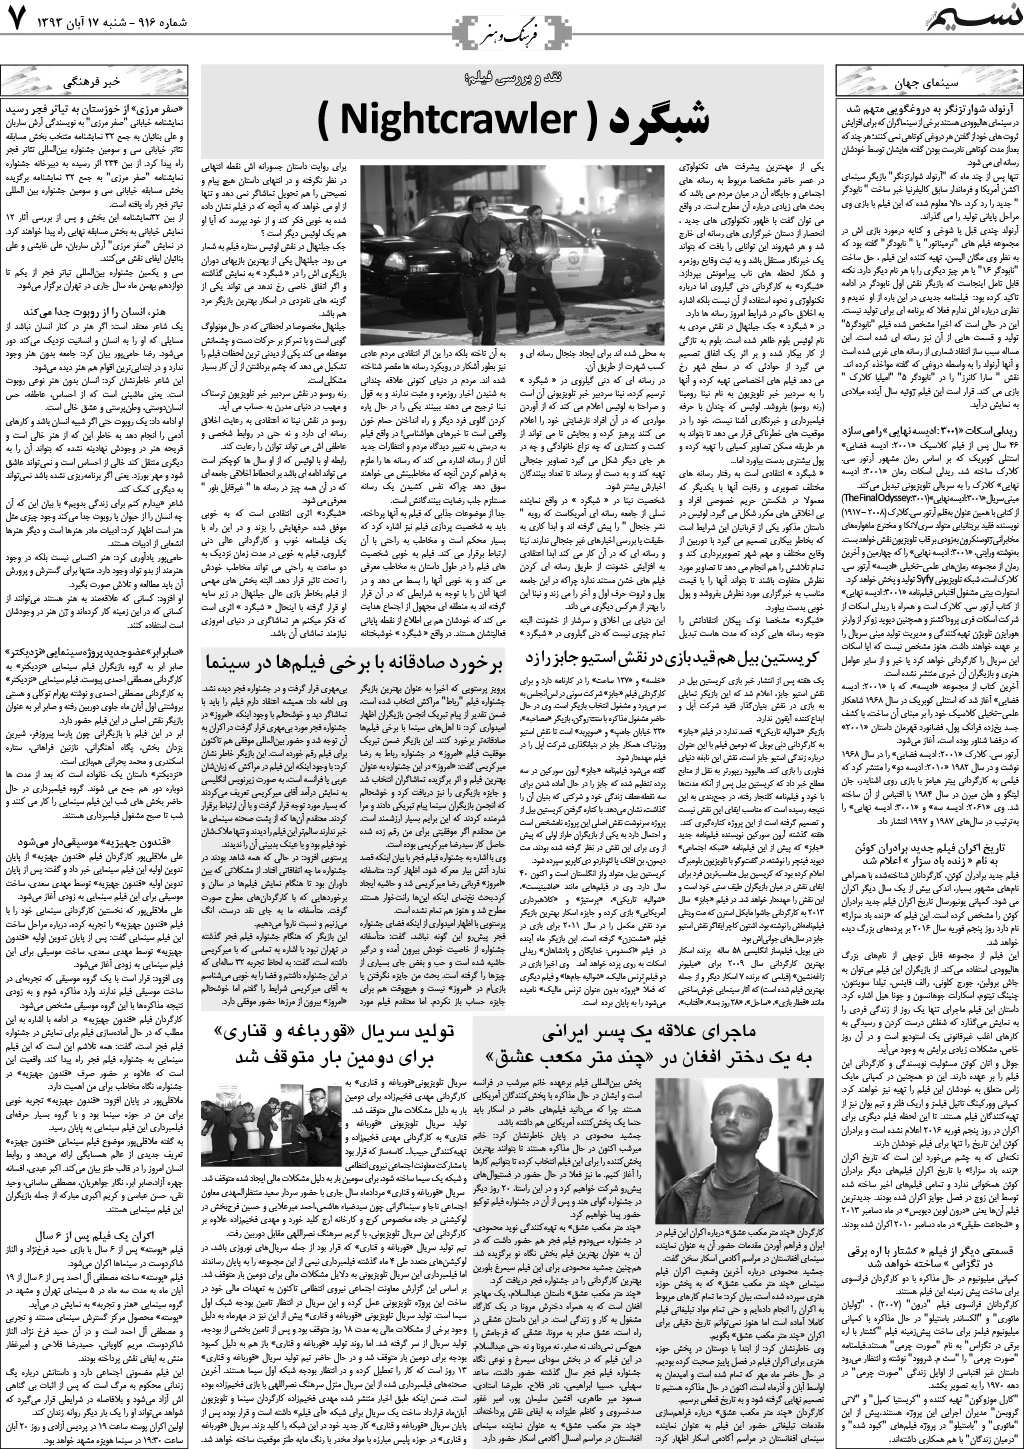 صفحه فرهنگ و هنر روزنامه نسیم شماره 916